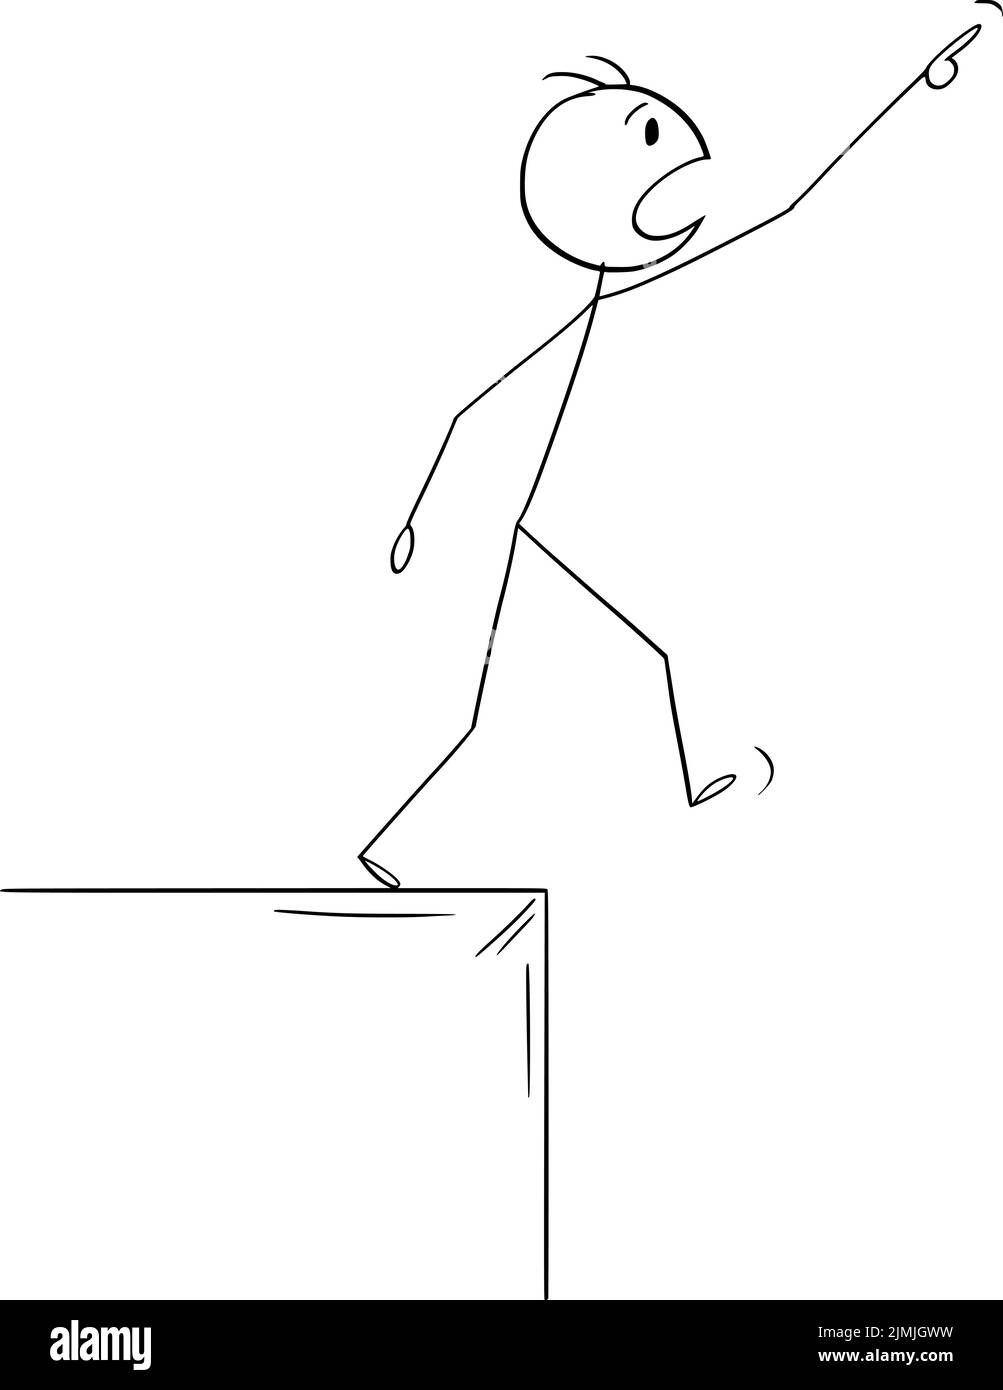 Persona señalando y mirando hacia arriba a algo y cayendo hacia abajo, figura vectorial de caricatura palo o ilustración de carácter. Ilustración del Vector